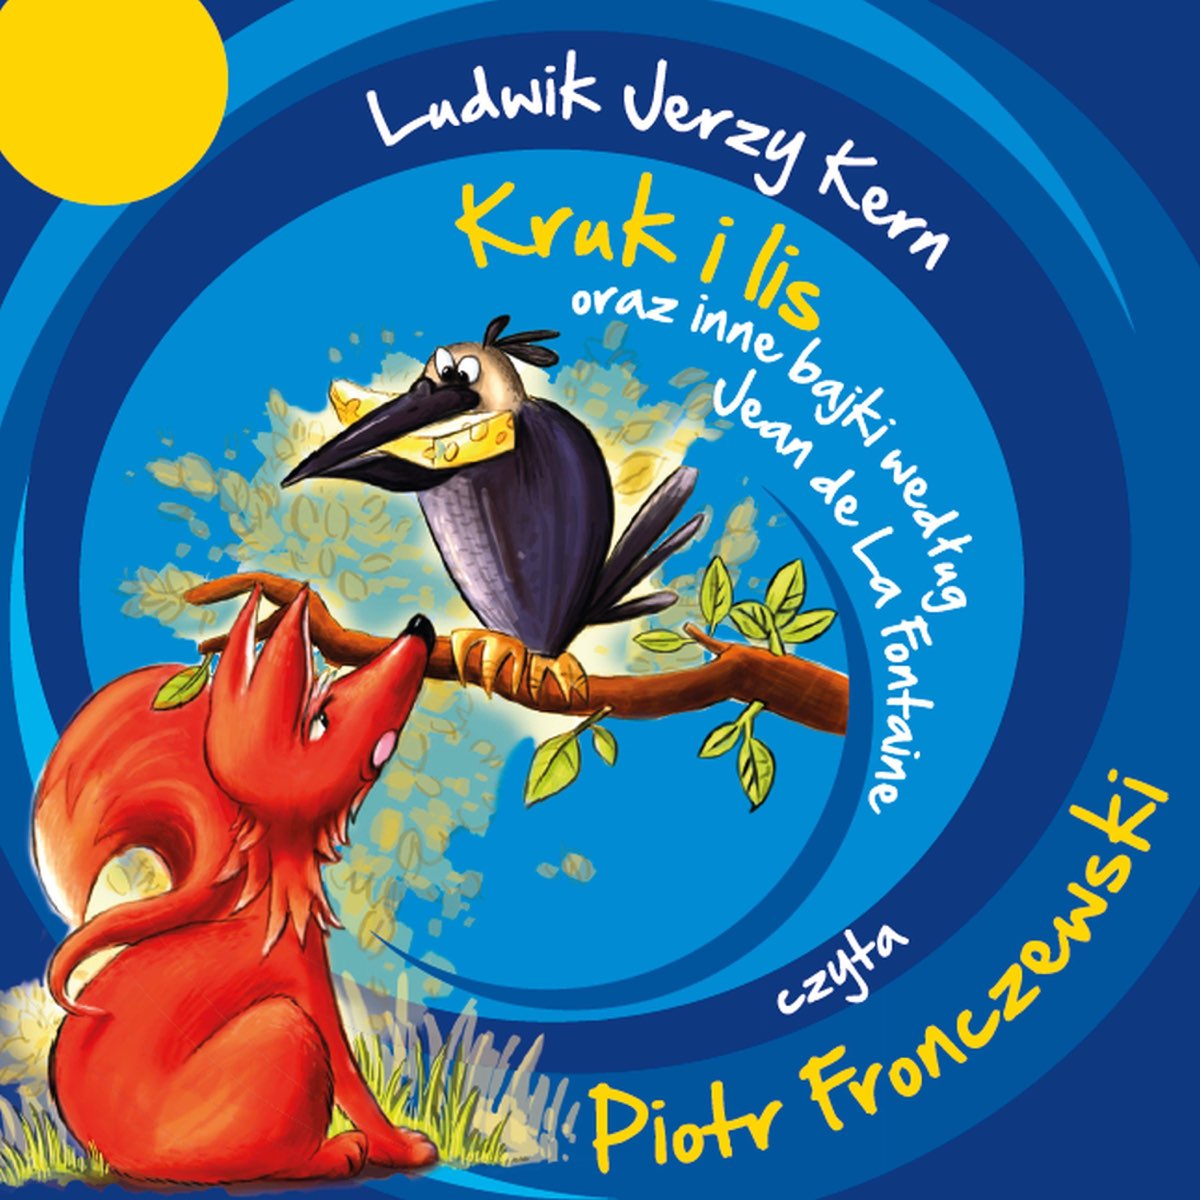 Ludwik Jerzy Kern - Kruk I lis oraz inne bajki według Jean de La Fontaine -  Album by Piotr Fronczewski - Apple Music